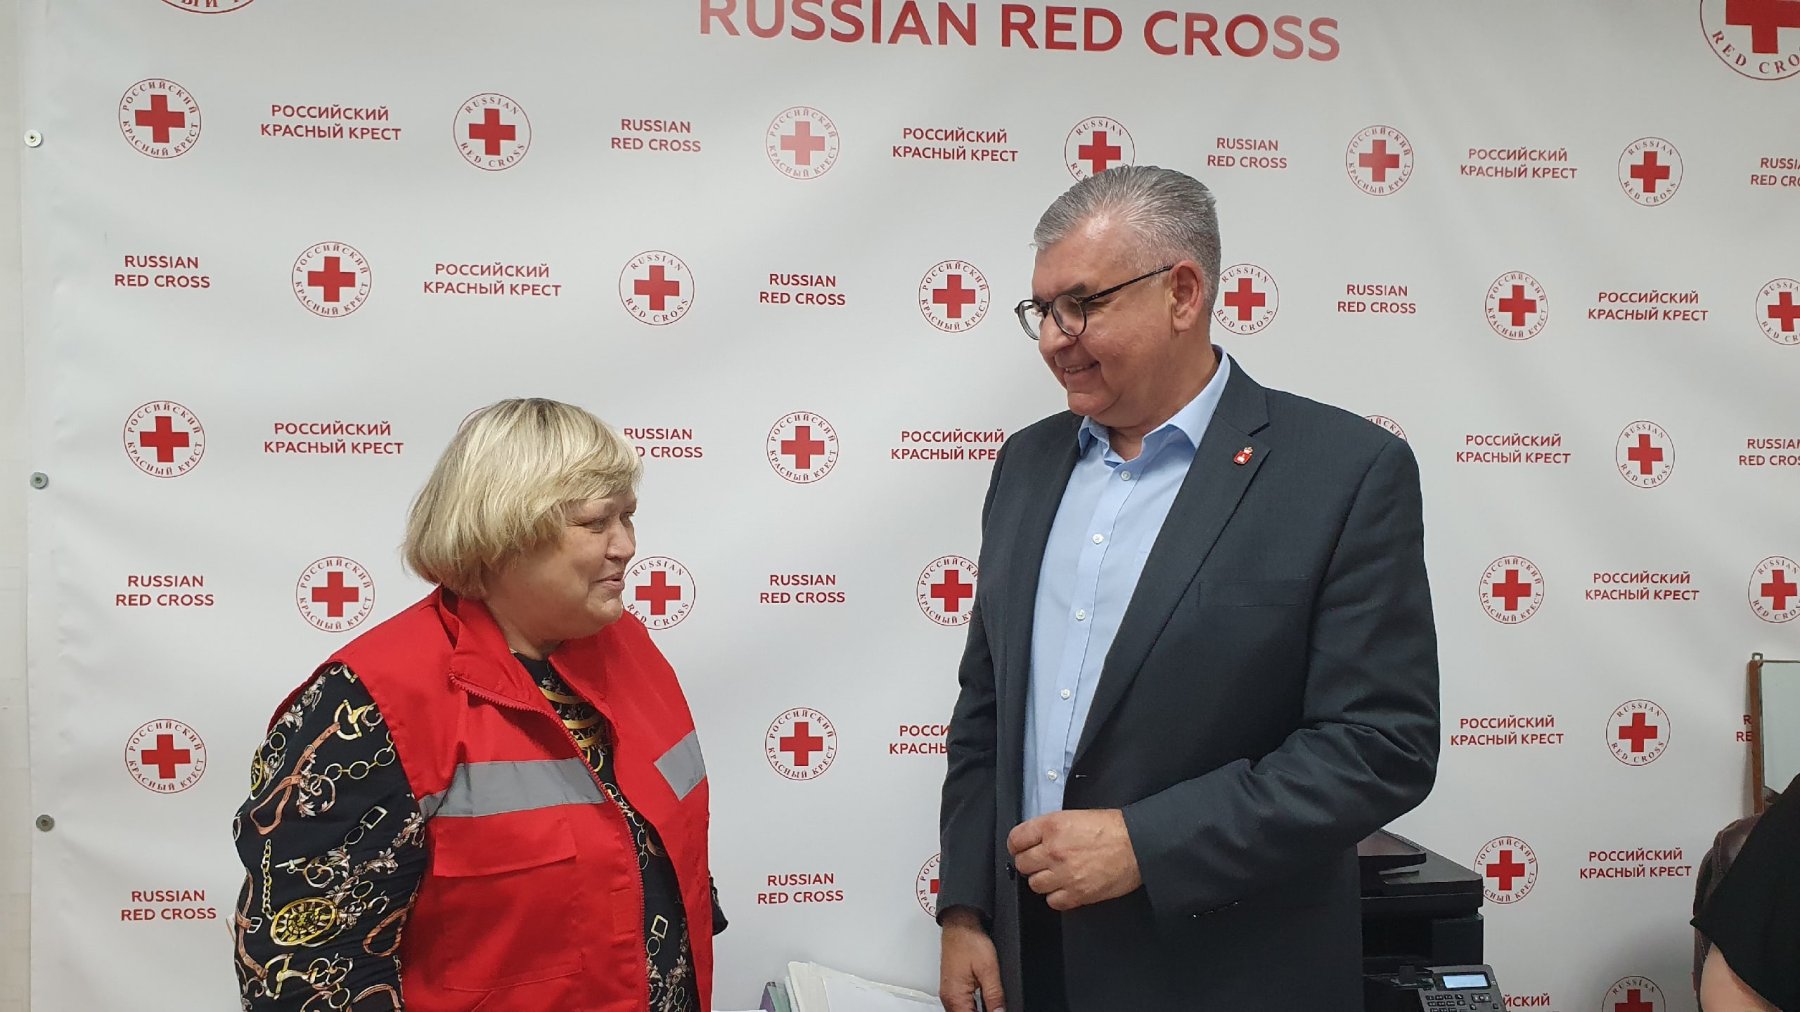 Уполномоченный по правам человека в Пермском крае посетил одно из старейших отделений Российского Красного Креста – Пермское региональное отделение.